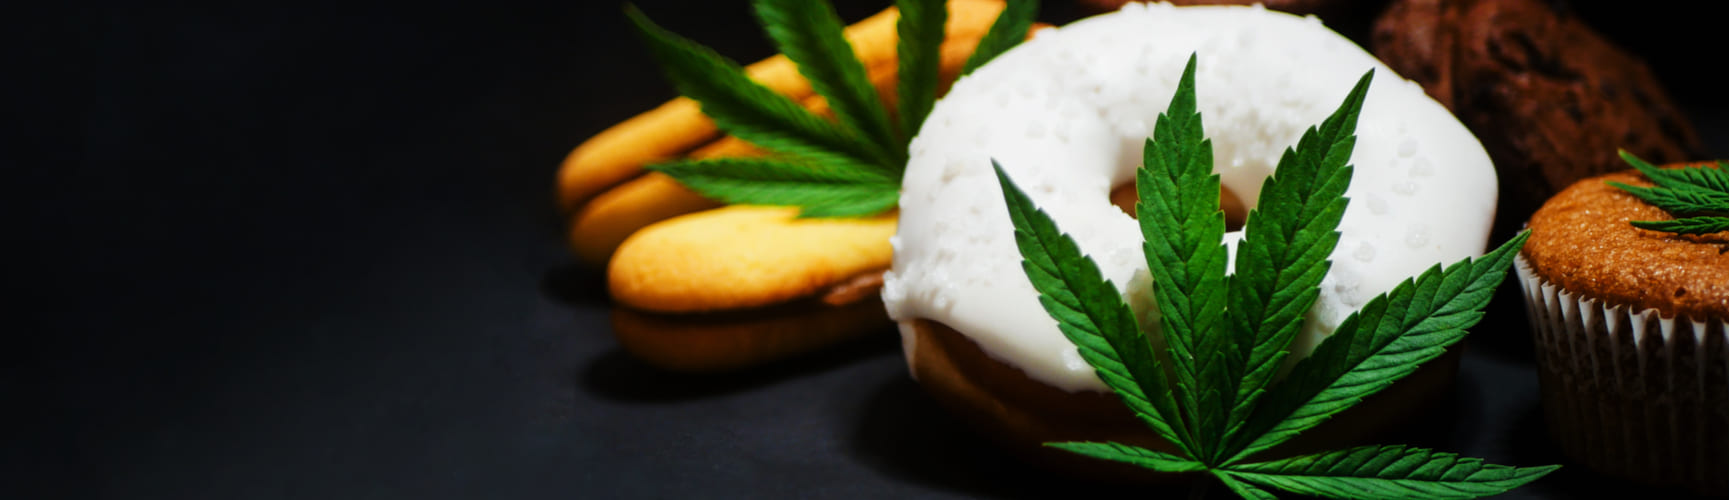 Medical Cannabis Delicacies